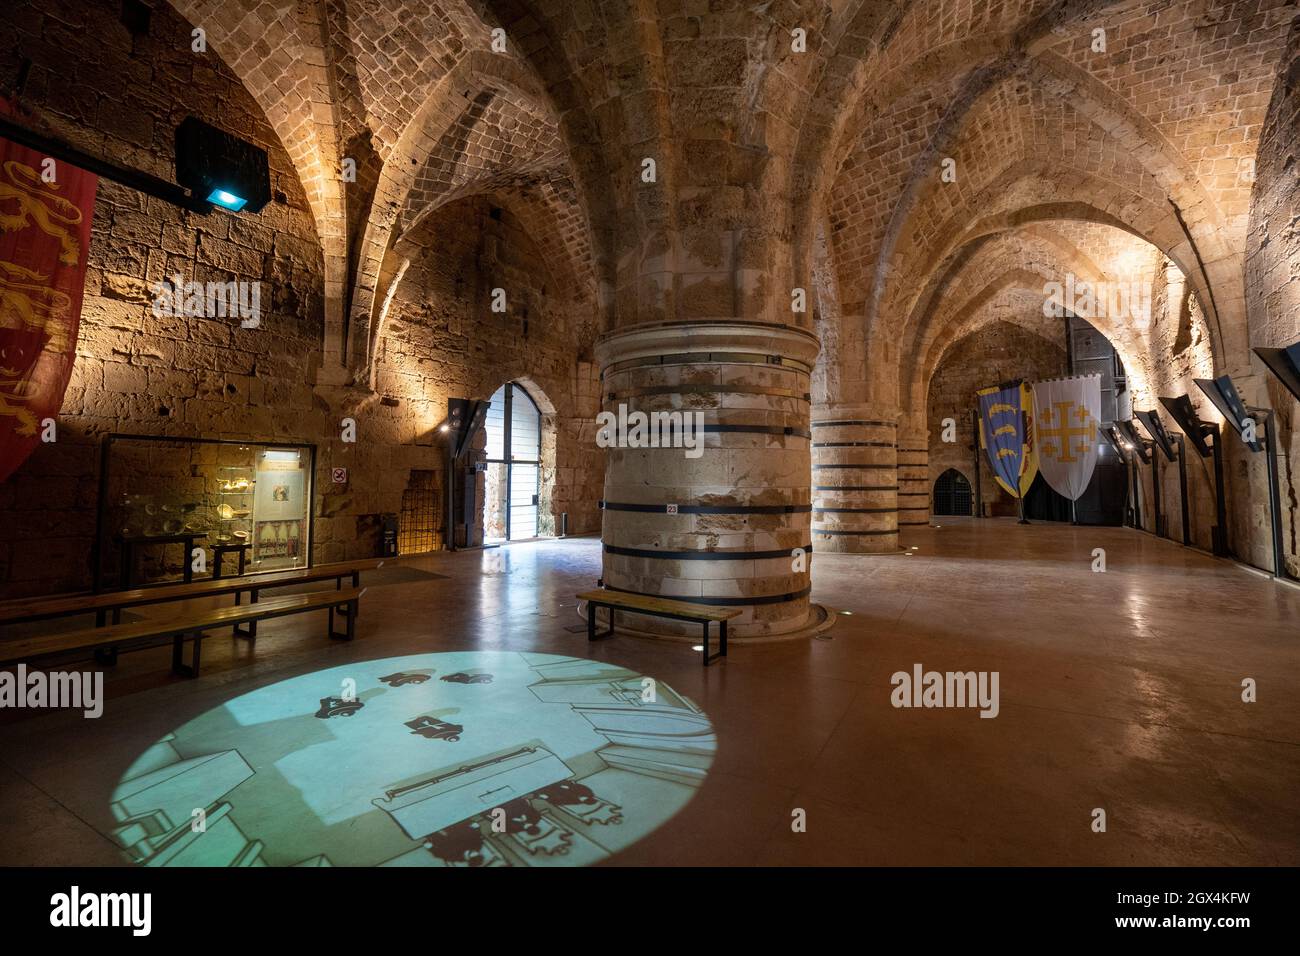 Il castello dei Crociati, il castello dei Templari nel quartiere storico, Acre o Akko, patrimonio dell'umanità dell'UNESCO, Israele, Medio Oriente Foto Stock